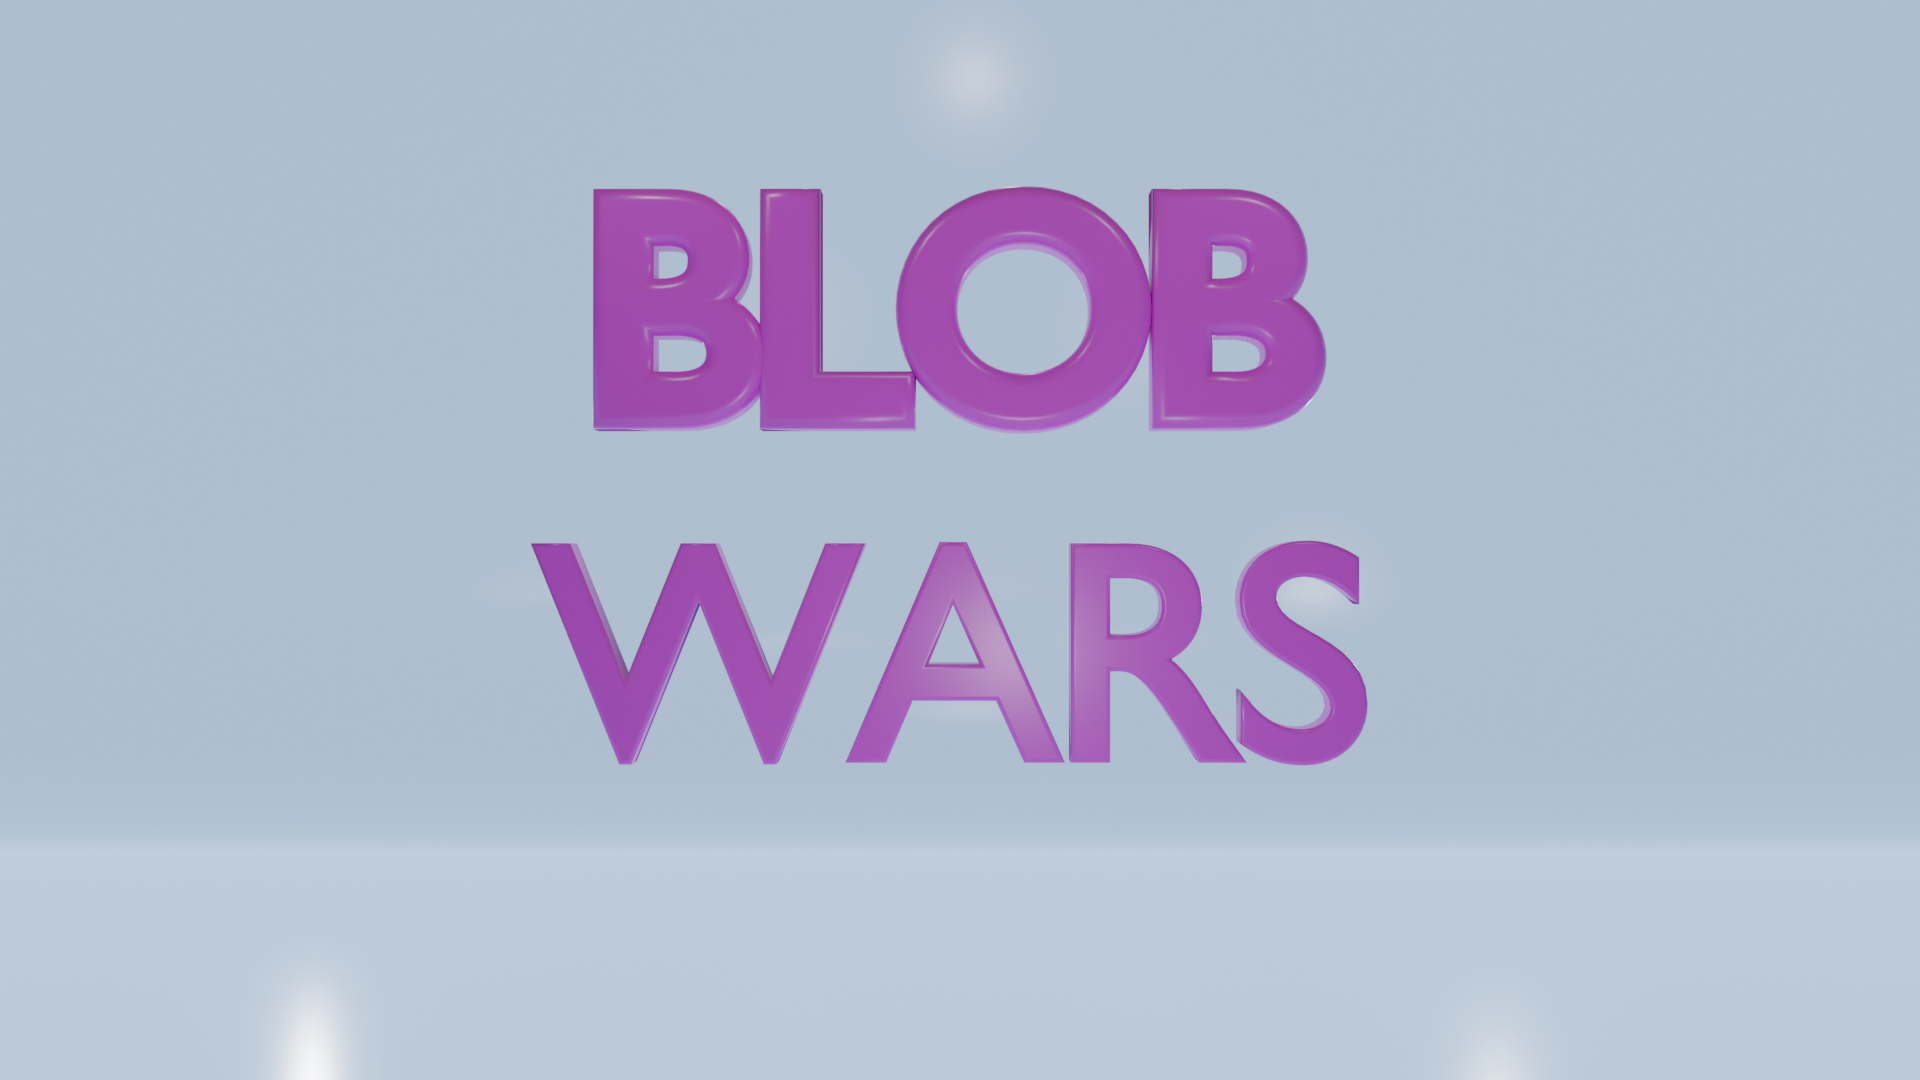 Blob Wars text